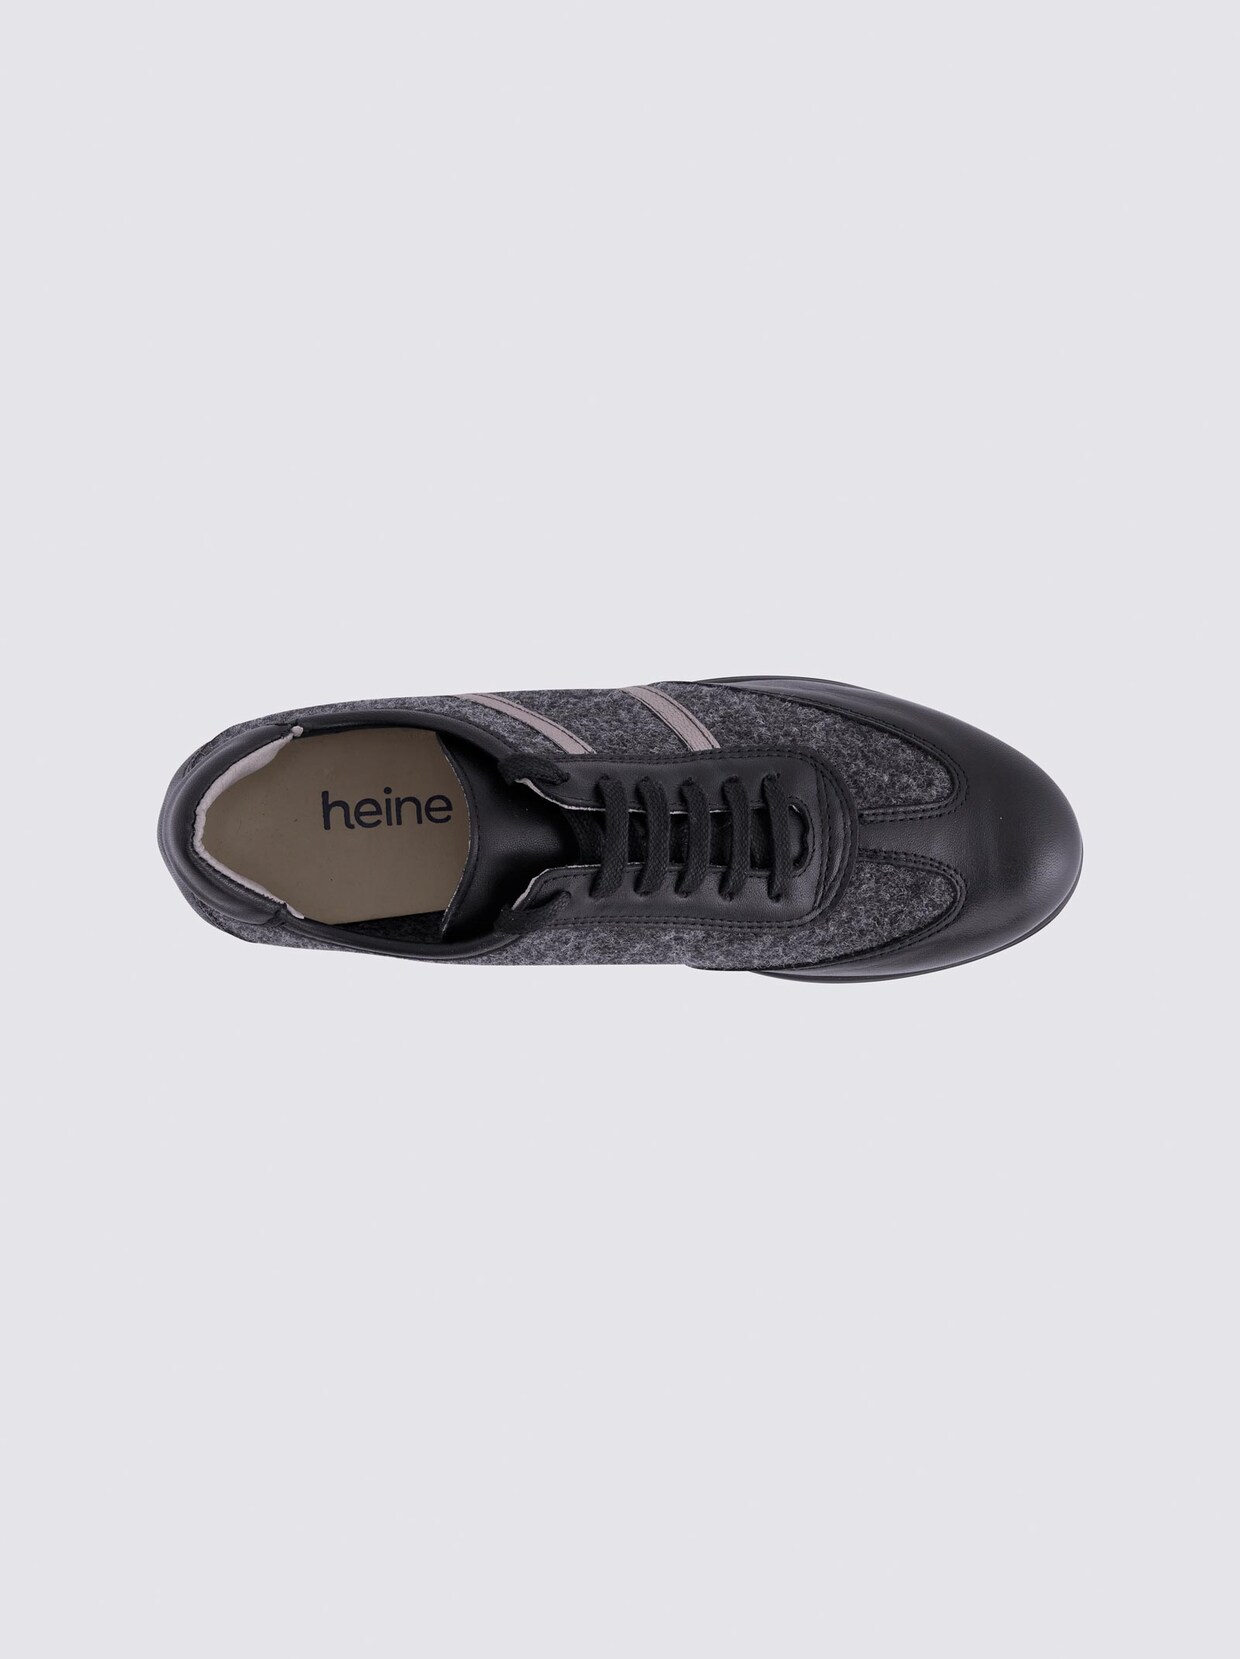 heine Sneaker - anthra-schwarz